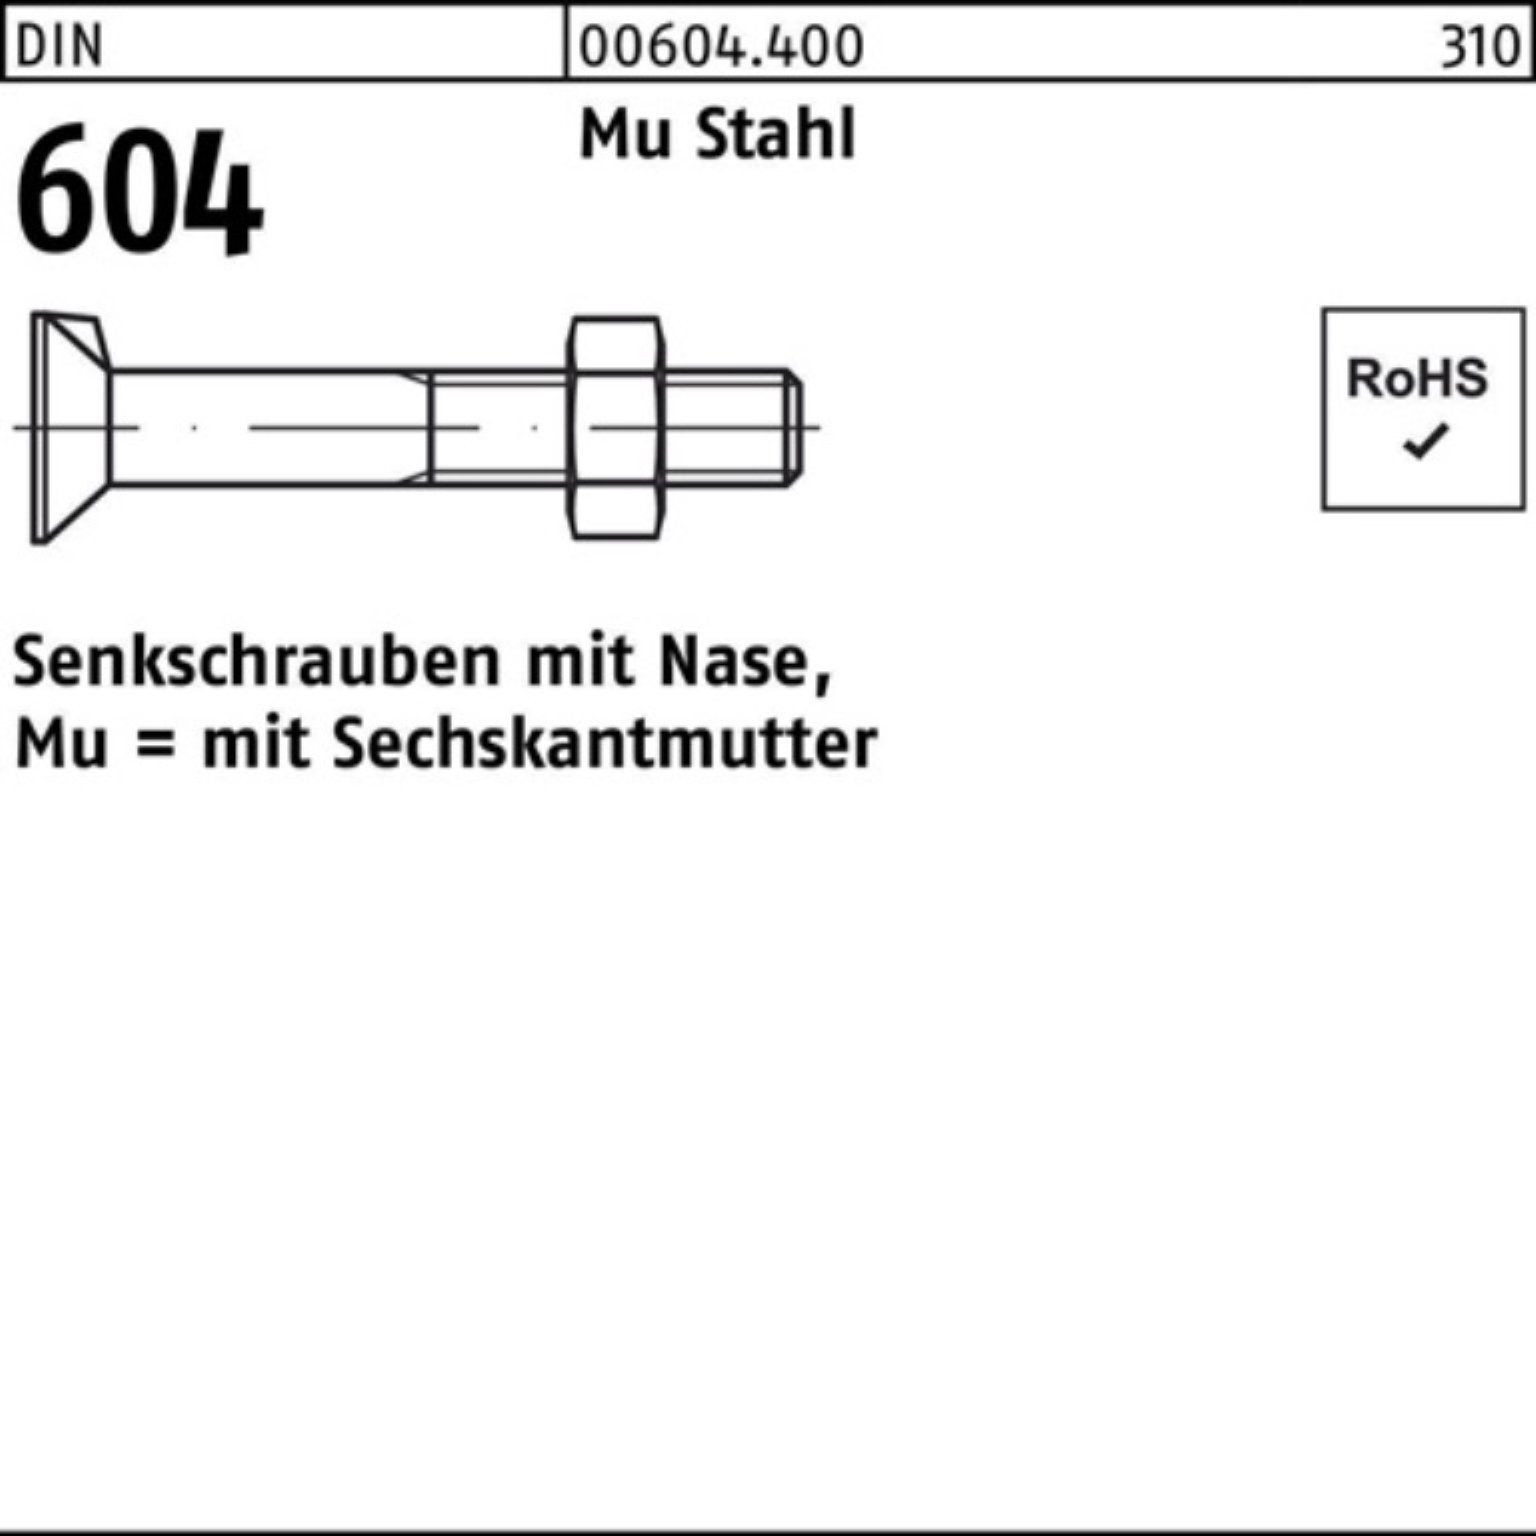 Reyher Senkschraube 100er Pack Senkschraube DIN 604 Nase/6-ktmutter M16x 30 Mu Stahl 4.6 5